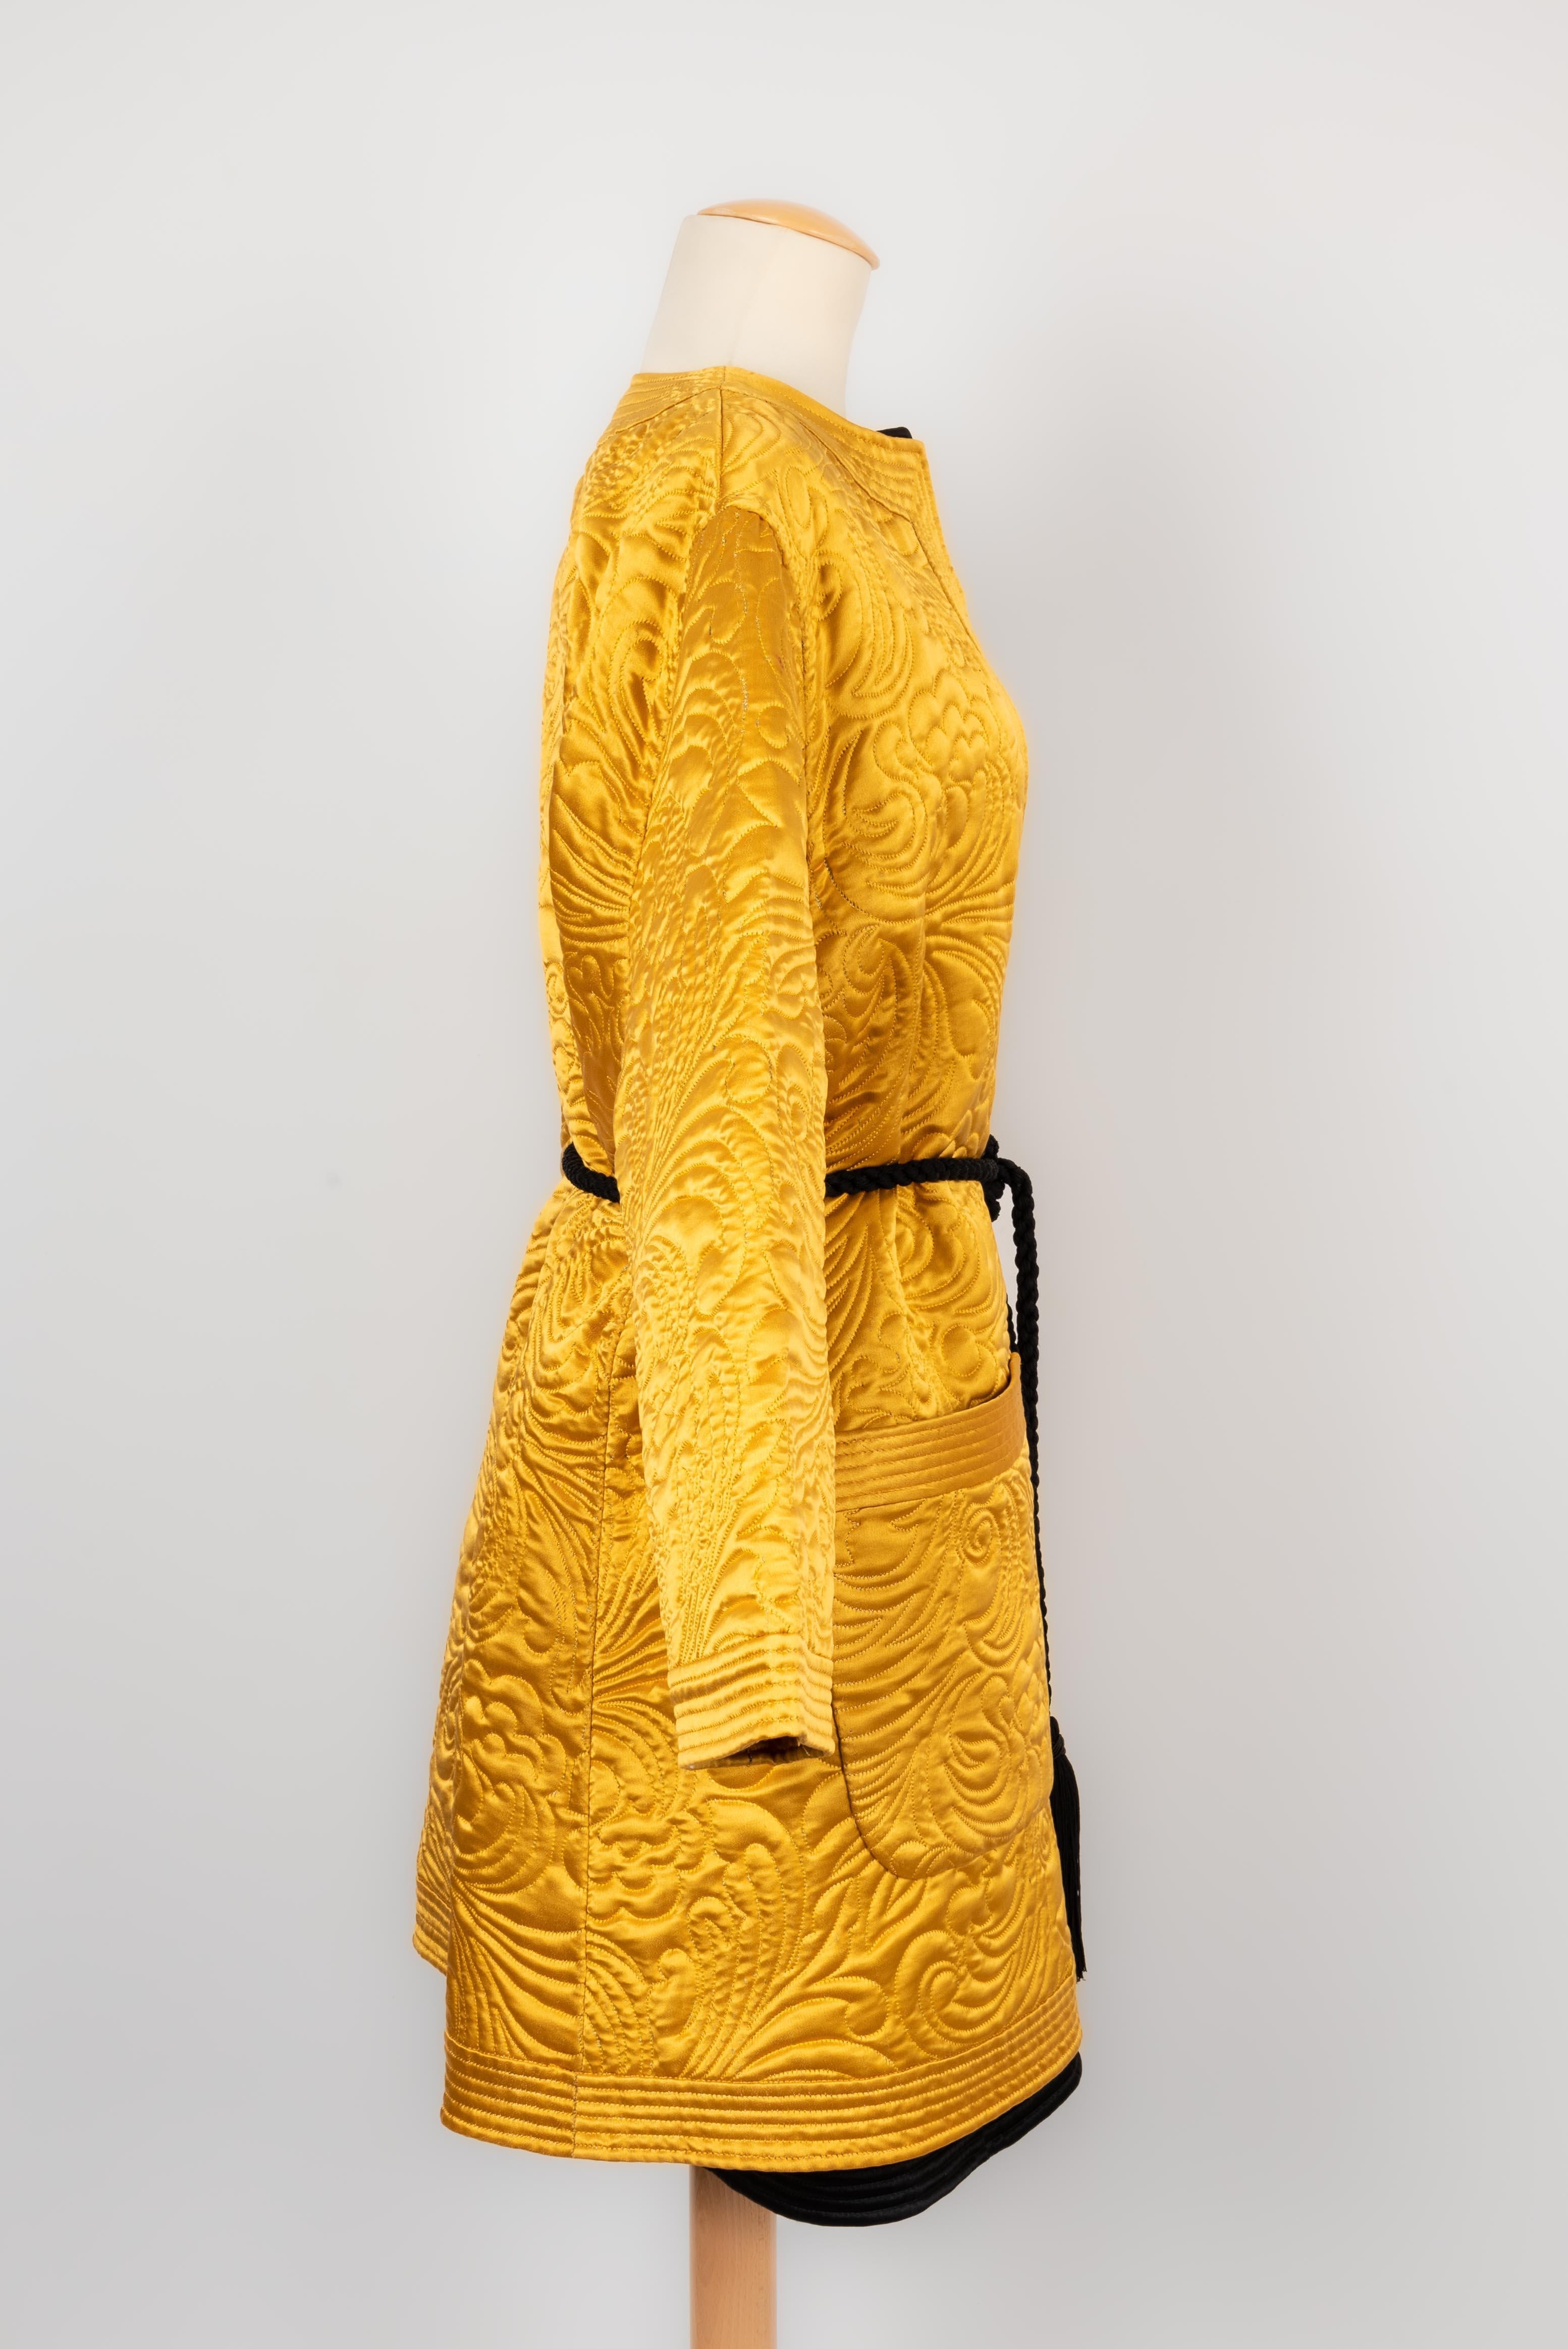 VALENTINO - Doppeljacken im Kimono-Stil aus gesteppter Seide.  Haute Couture Stück Herbst-Winter 1990/91 Kollektion. Keine Größe oder Zusammensetzung Label, sie passen eine 40FR.

Bedingung:
Sehr guter Zustand

Abmessungen:
Gelbe Jacke: